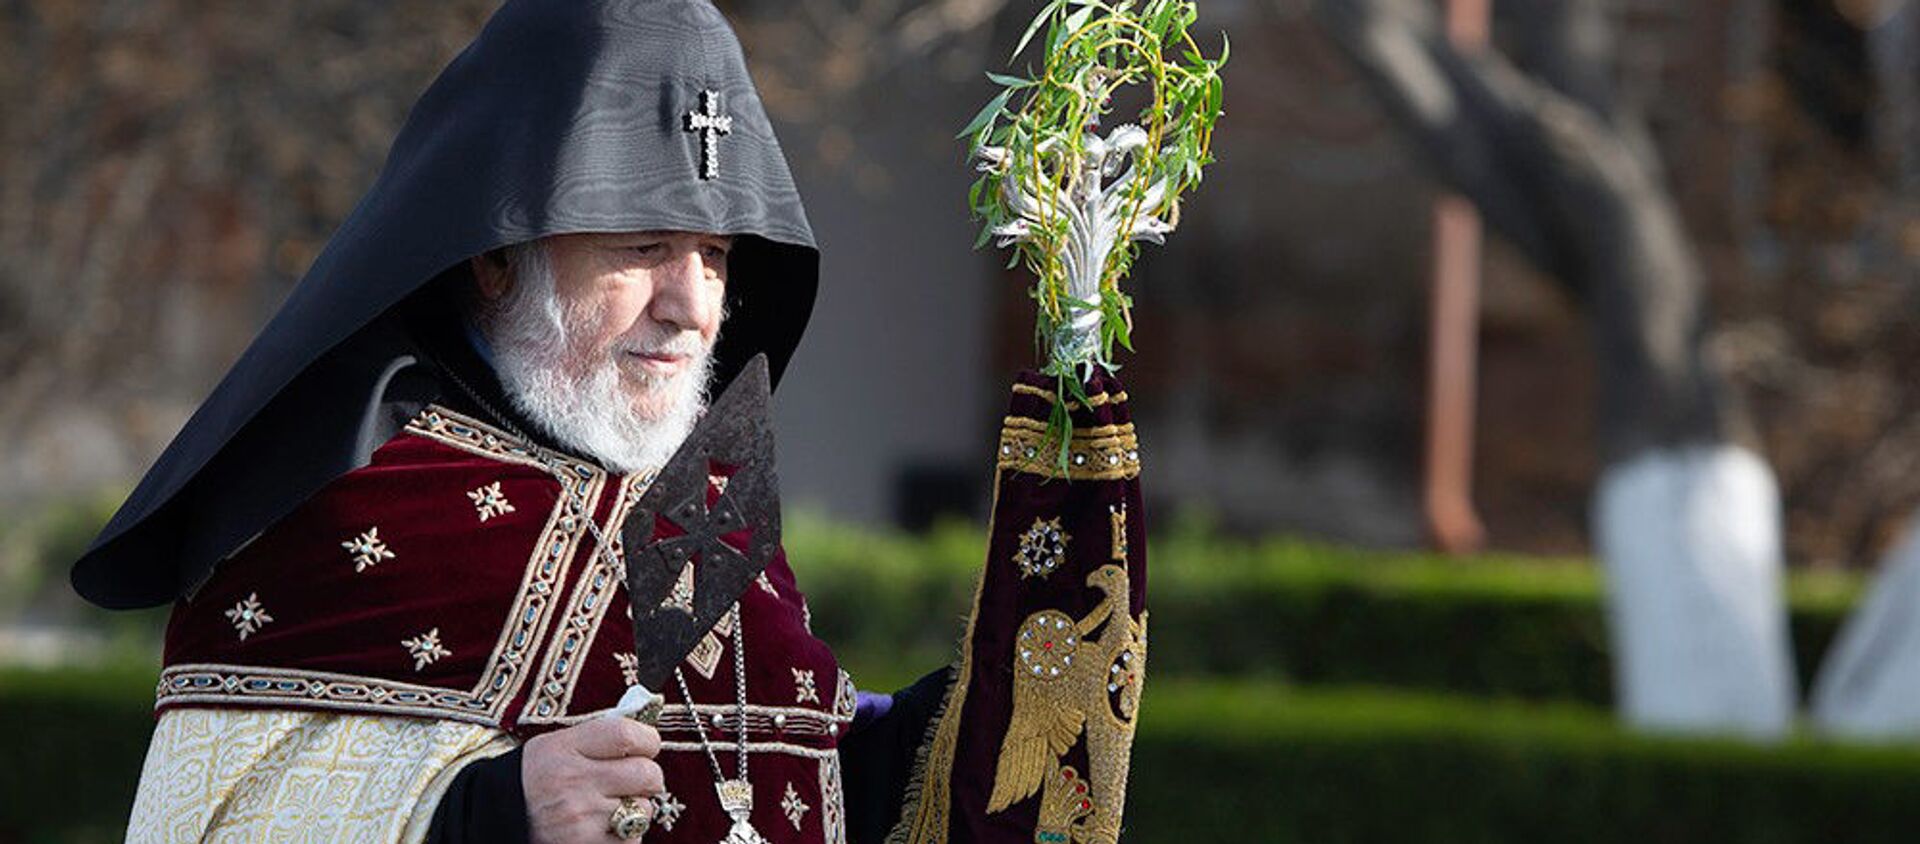 Католикос Гарегин II со святым Гегардом в руке проводит церемонию праздника Цахказард в Святом Первопрестольном Эчмиадзине (5 апреля 2020). Вагаршапат - Sputnik Արմենիա, 1920, 26.05.2021